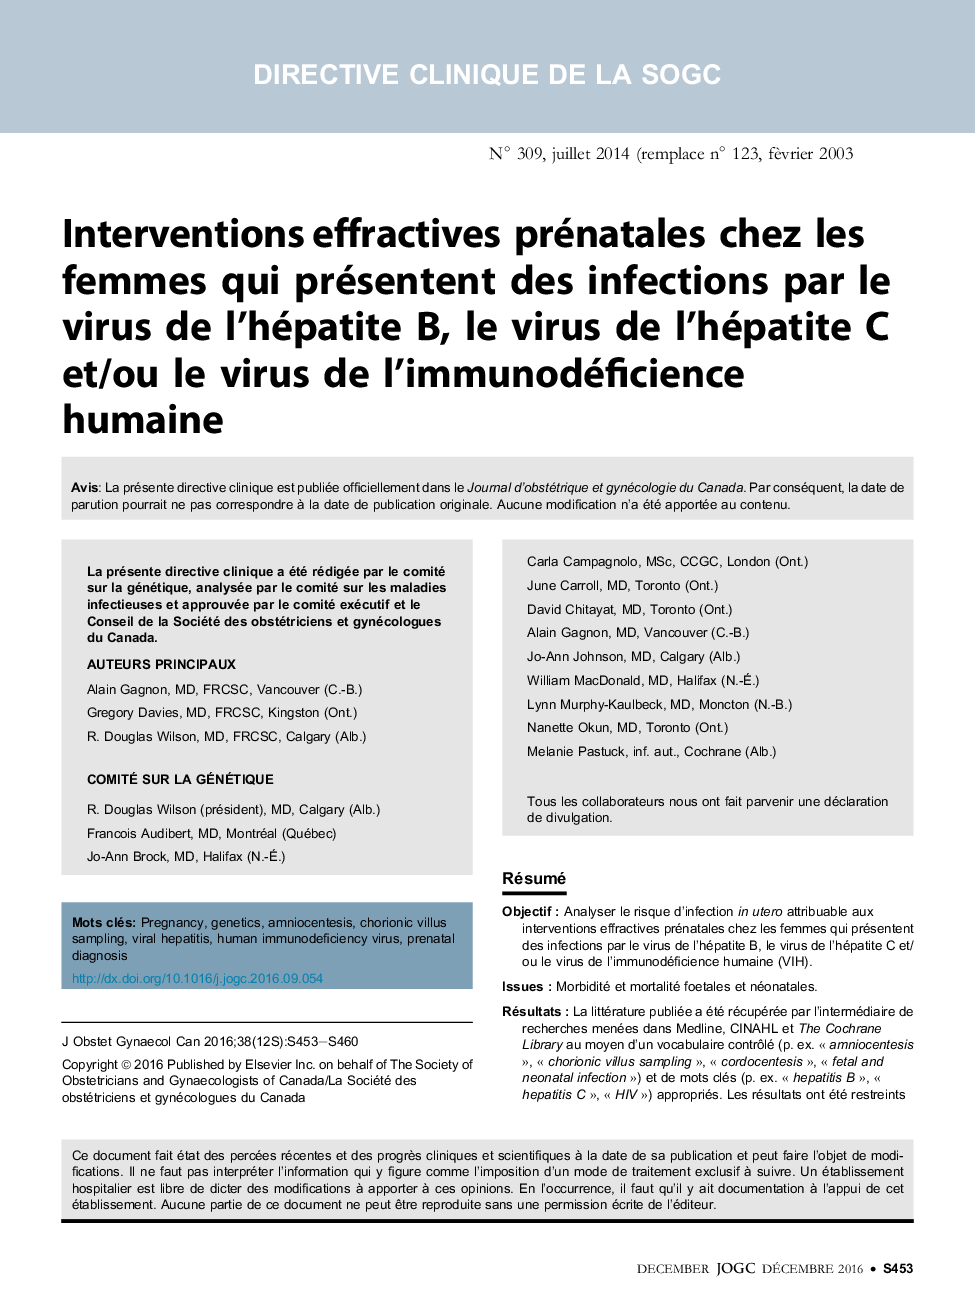 Interventions effractives prénatales chez les femmes qui présentent des infections par le virus de l'hépatite B, le virus de l'hépatite C et/ou le virus de l'immunodéficience humaine